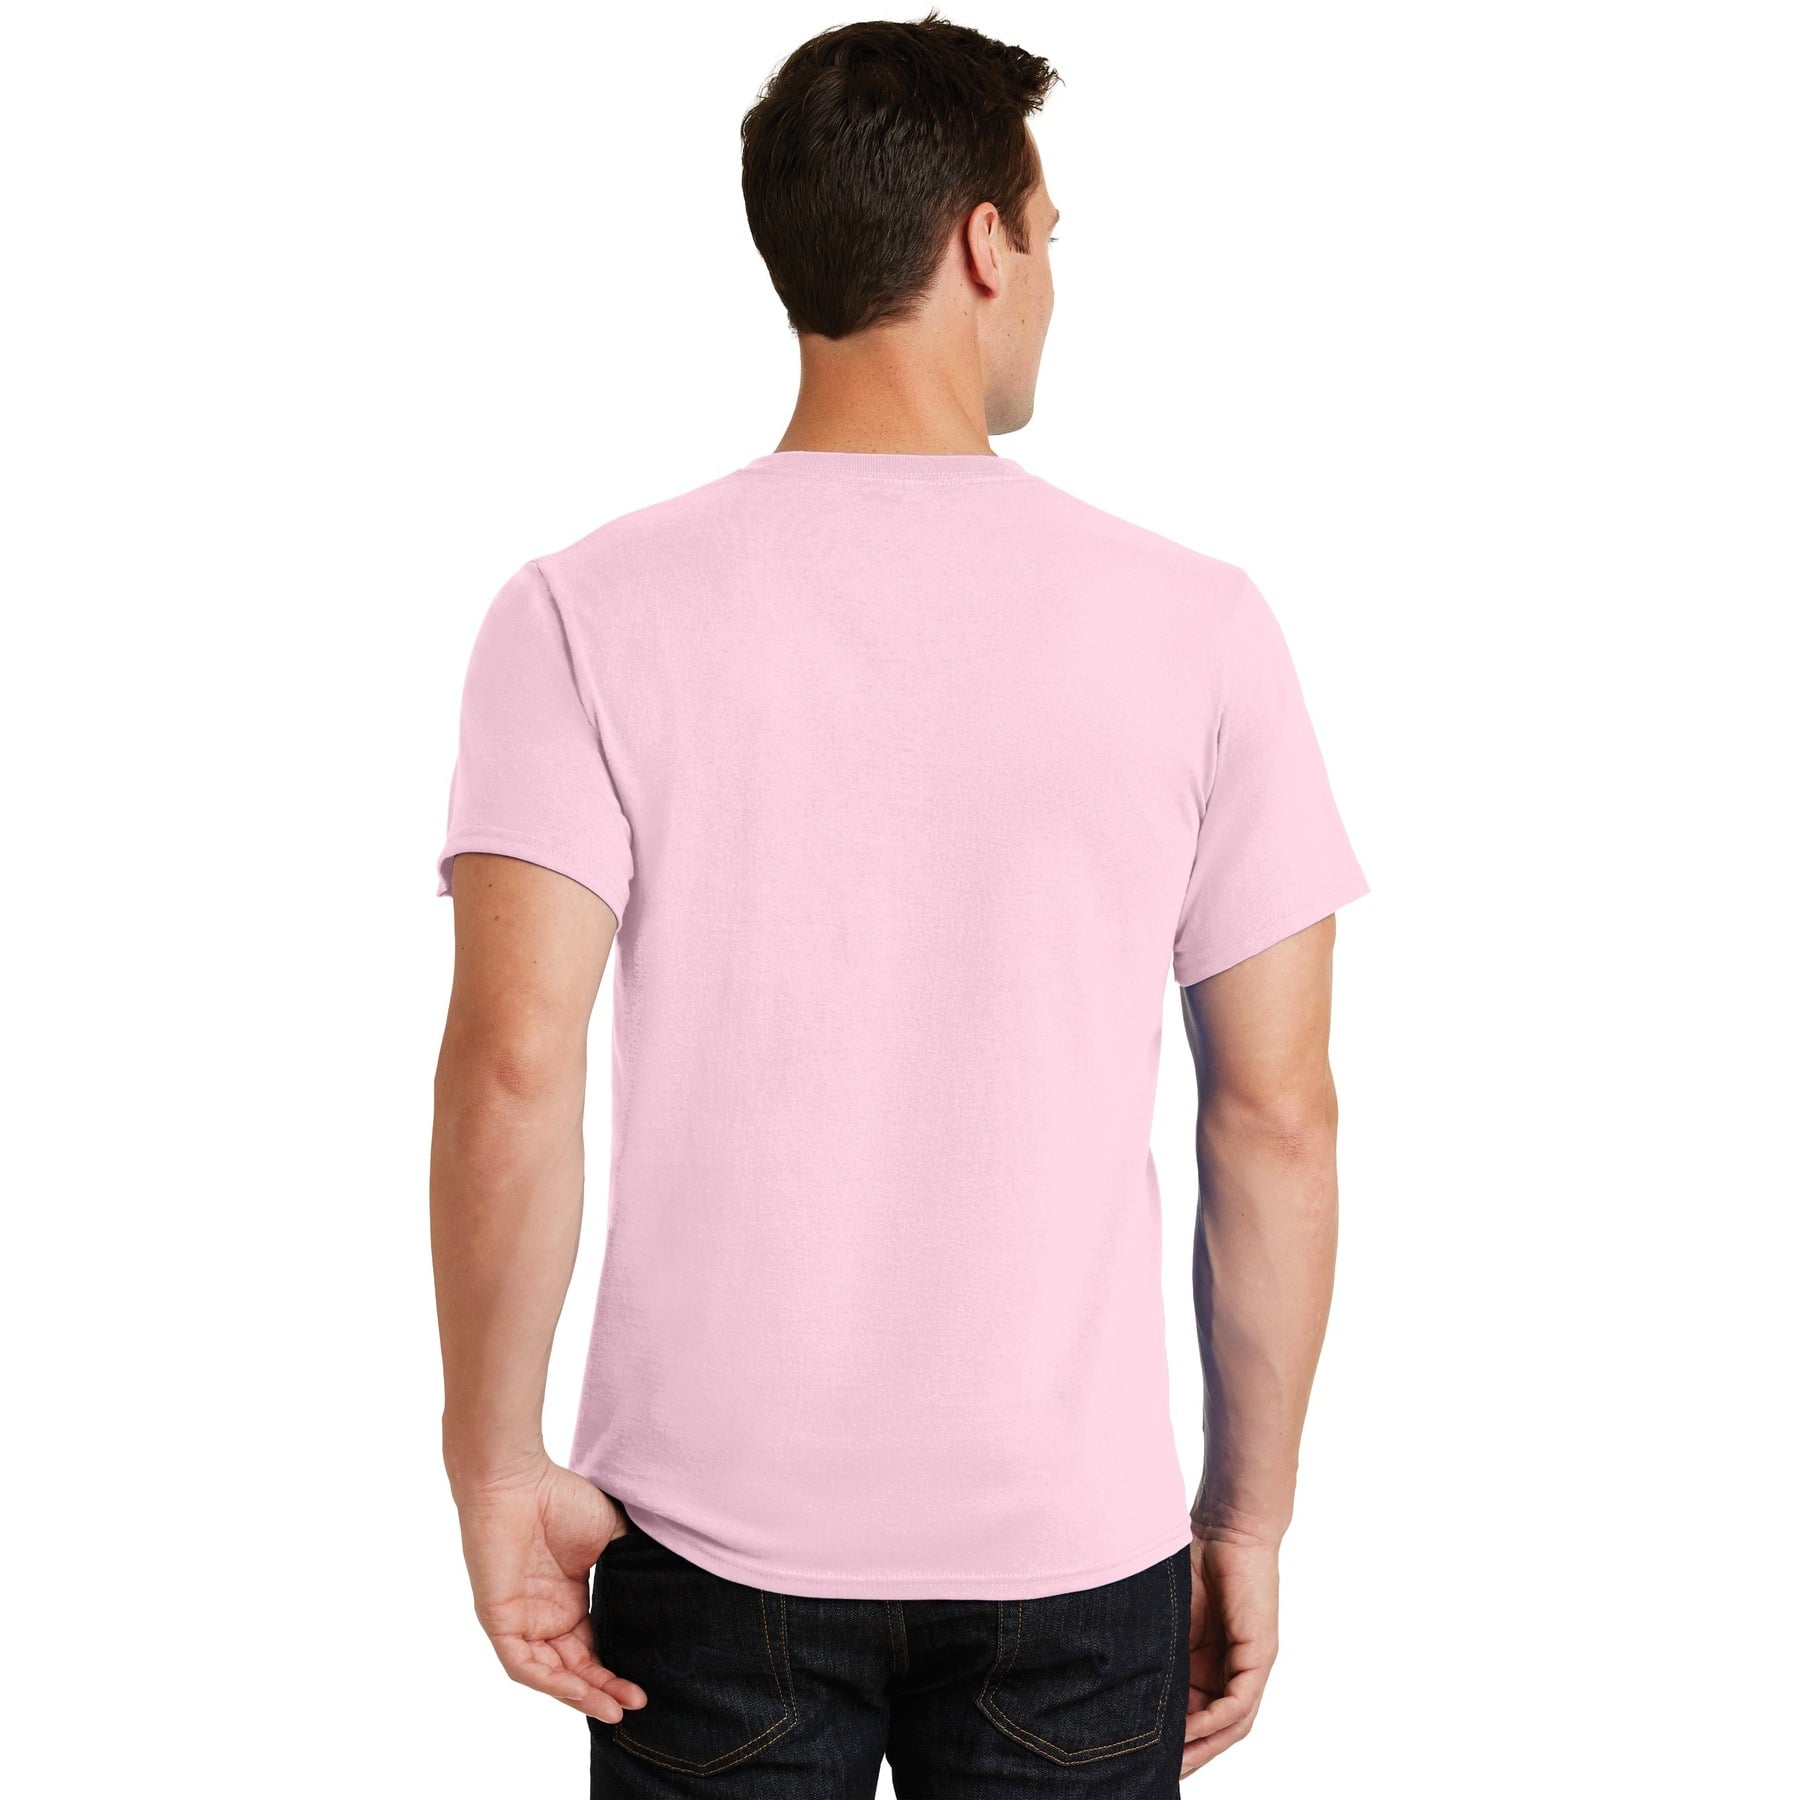 plain pink t shirt